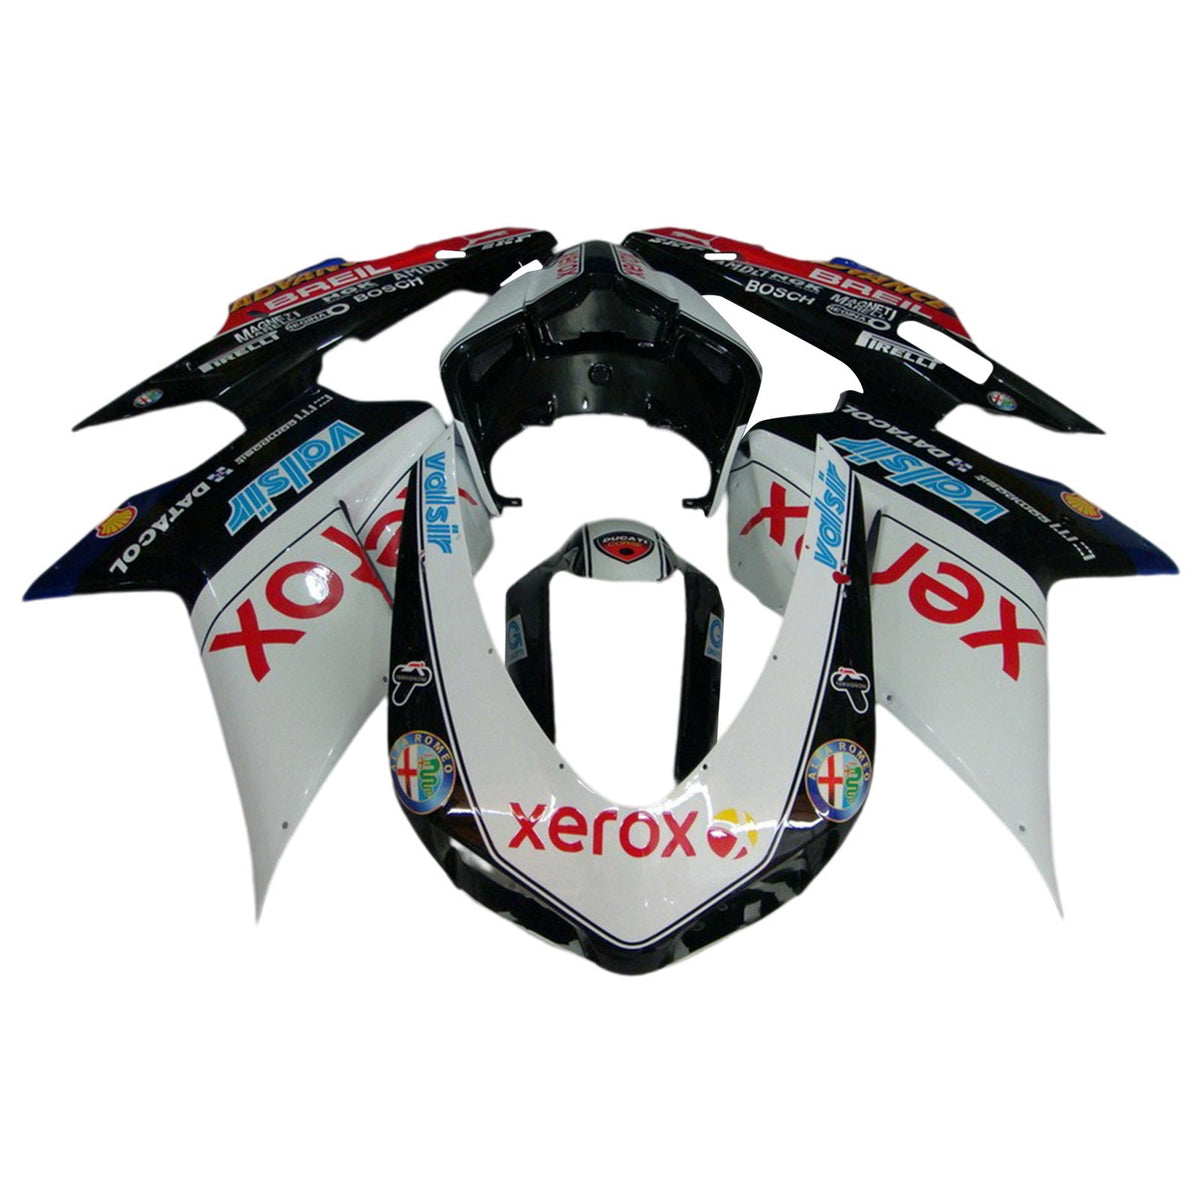 Amotopart 2007-2012 Ducati 1098 1198 848 Kit carena Style3 in bianco e nero